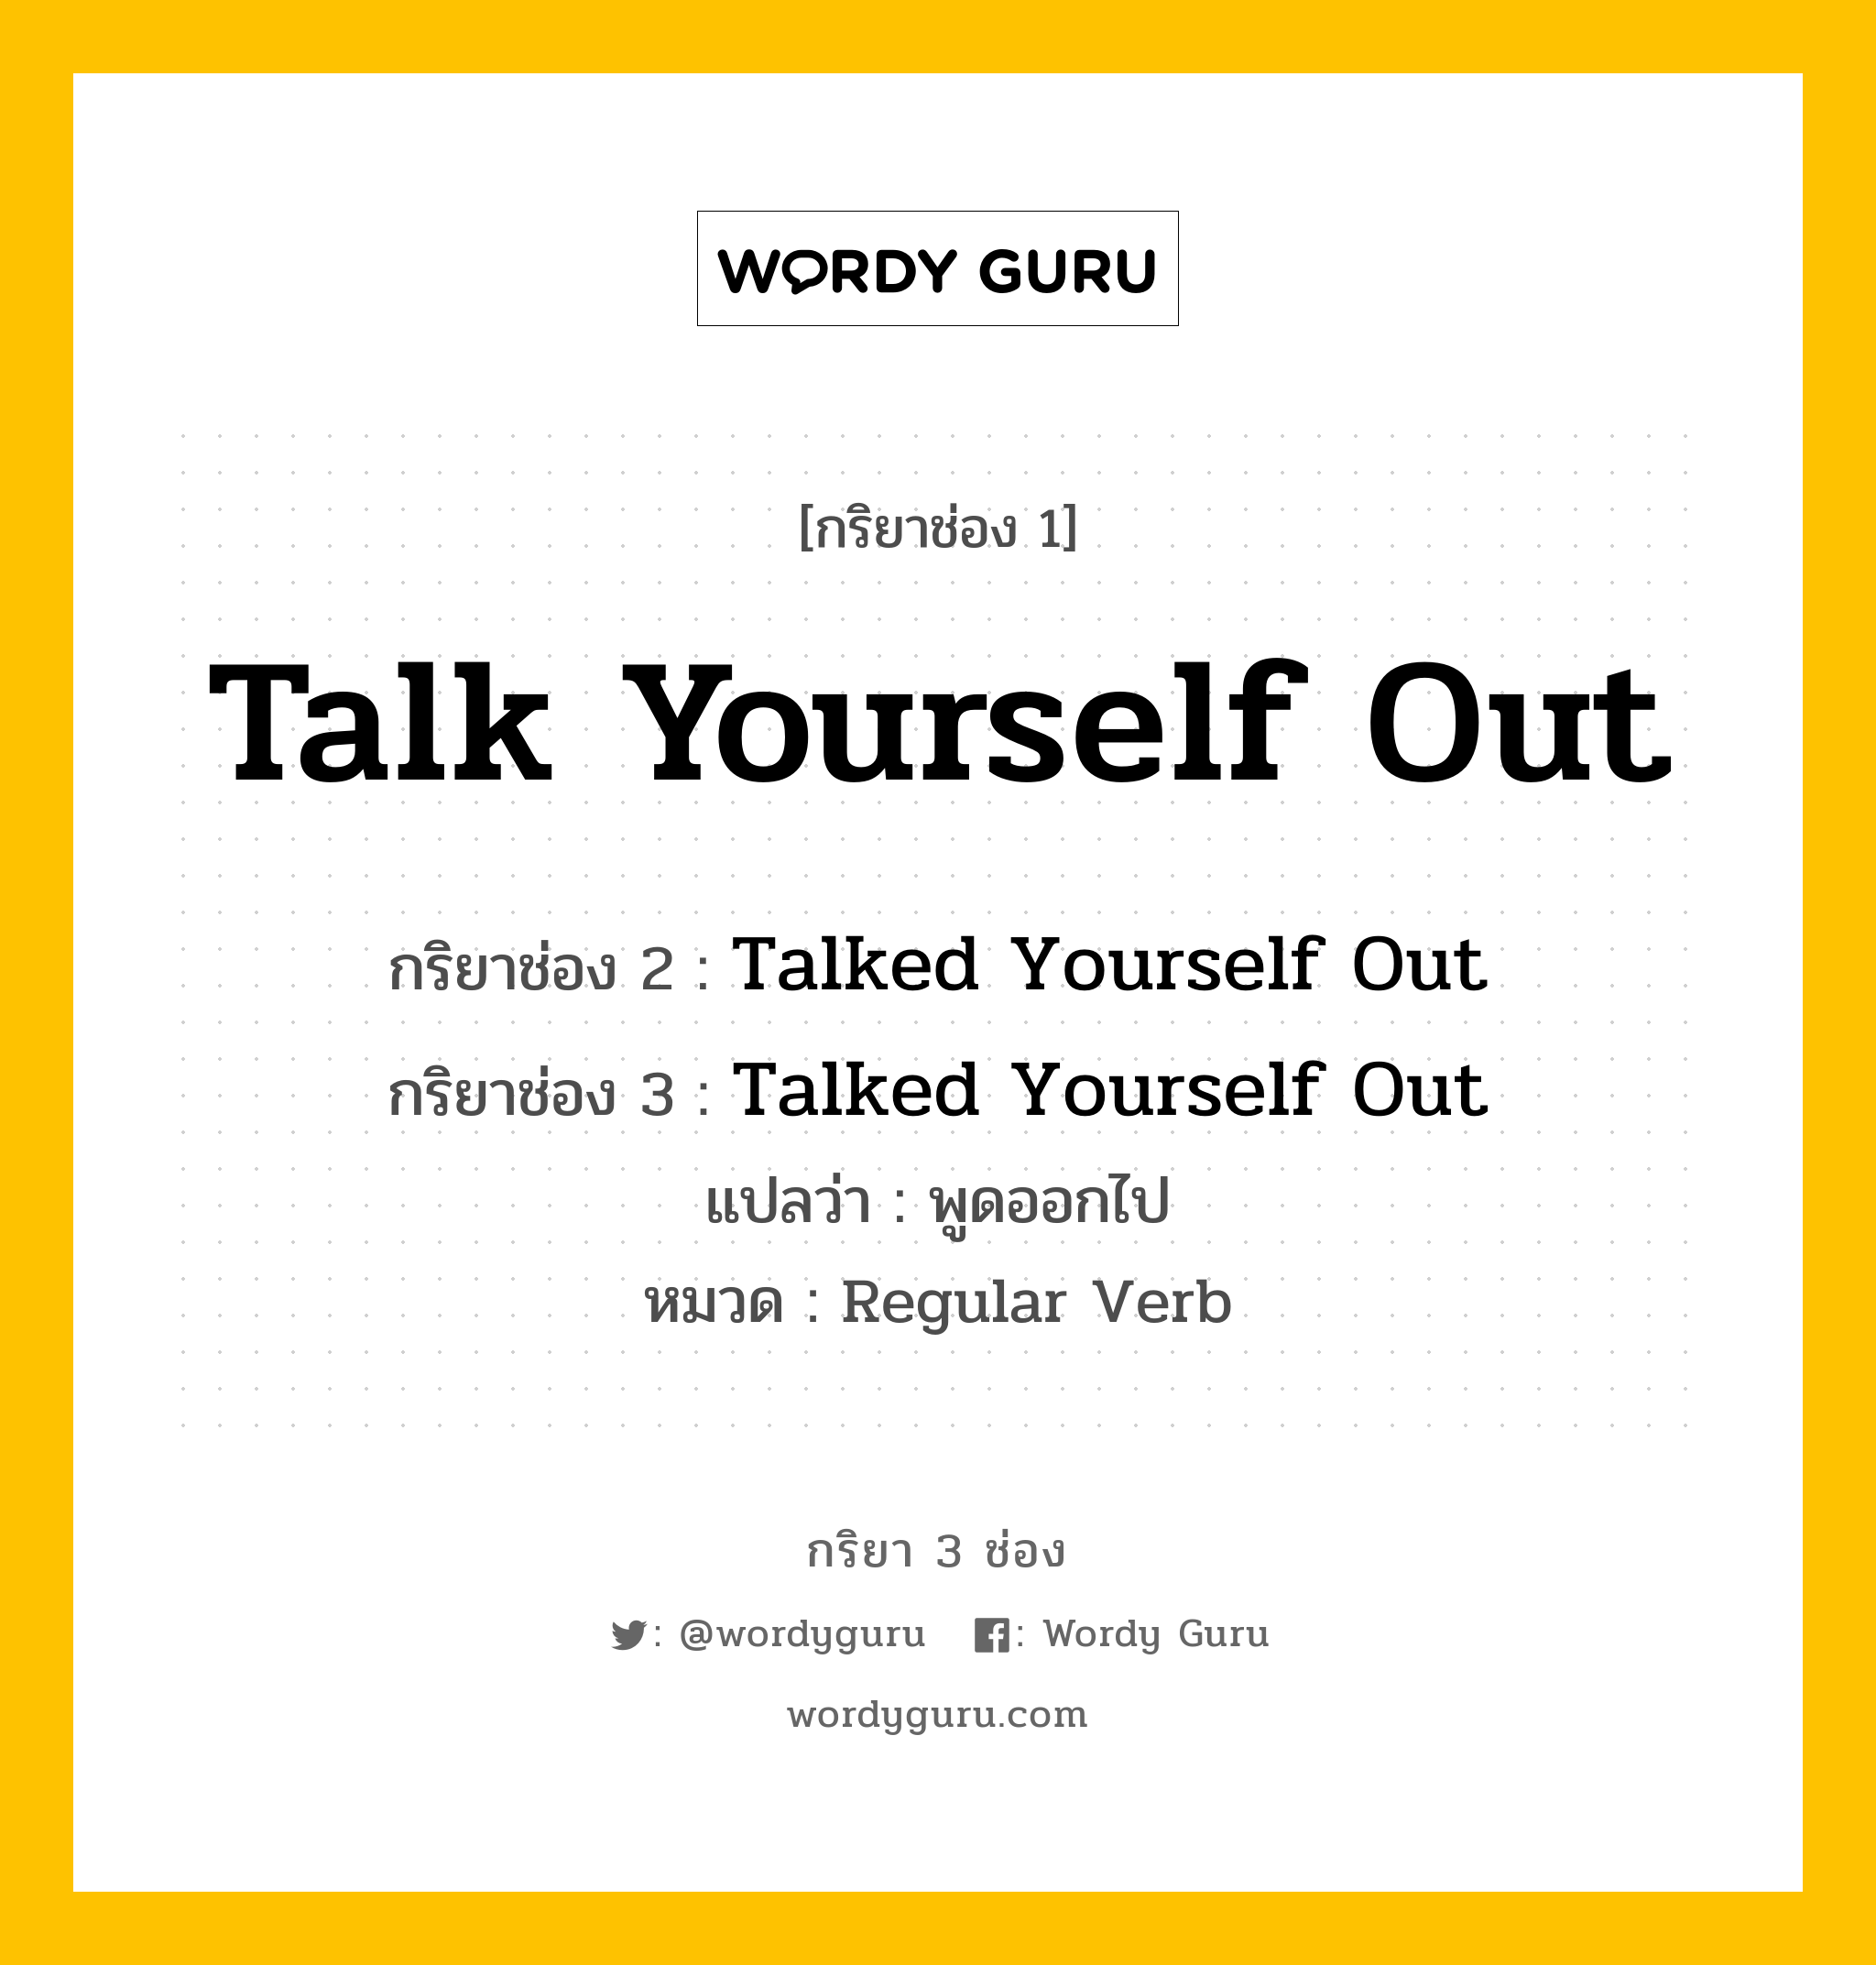 กริยา 3 ช่อง ของ Talk Yourself Out คืออะไร?, กริยาช่อง 1 Talk Yourself Out กริยาช่อง 2 Talked Yourself Out กริยาช่อง 3 Talked Yourself Out แปลว่า พูดออกไป หมวด Regular Verb หมวด Regular Verb